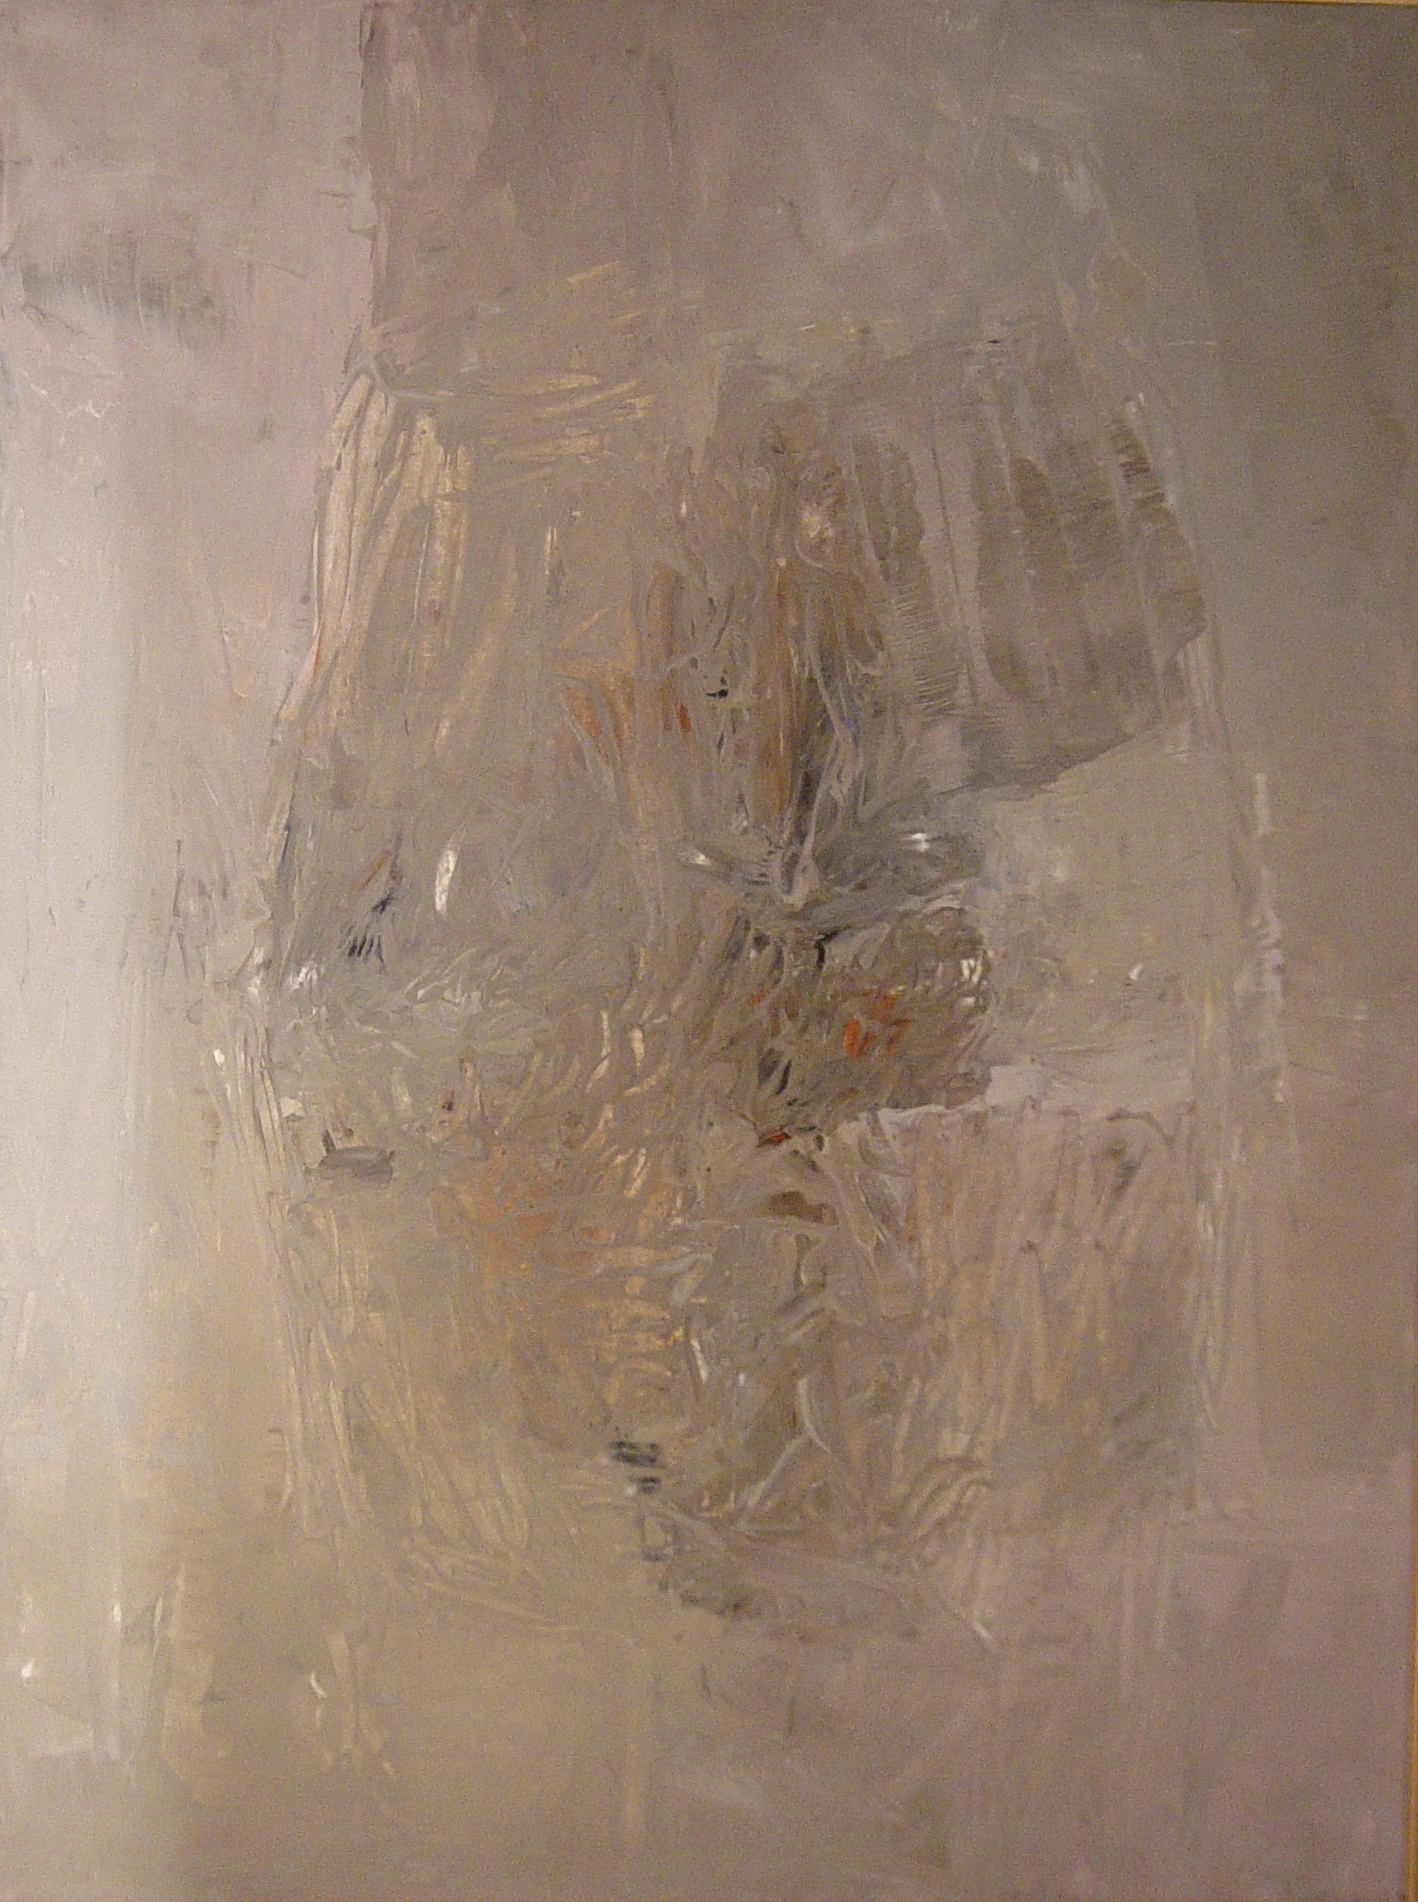 Dalla serie Gesto e materia, 1961, olio su tela, 200 x 150 cm